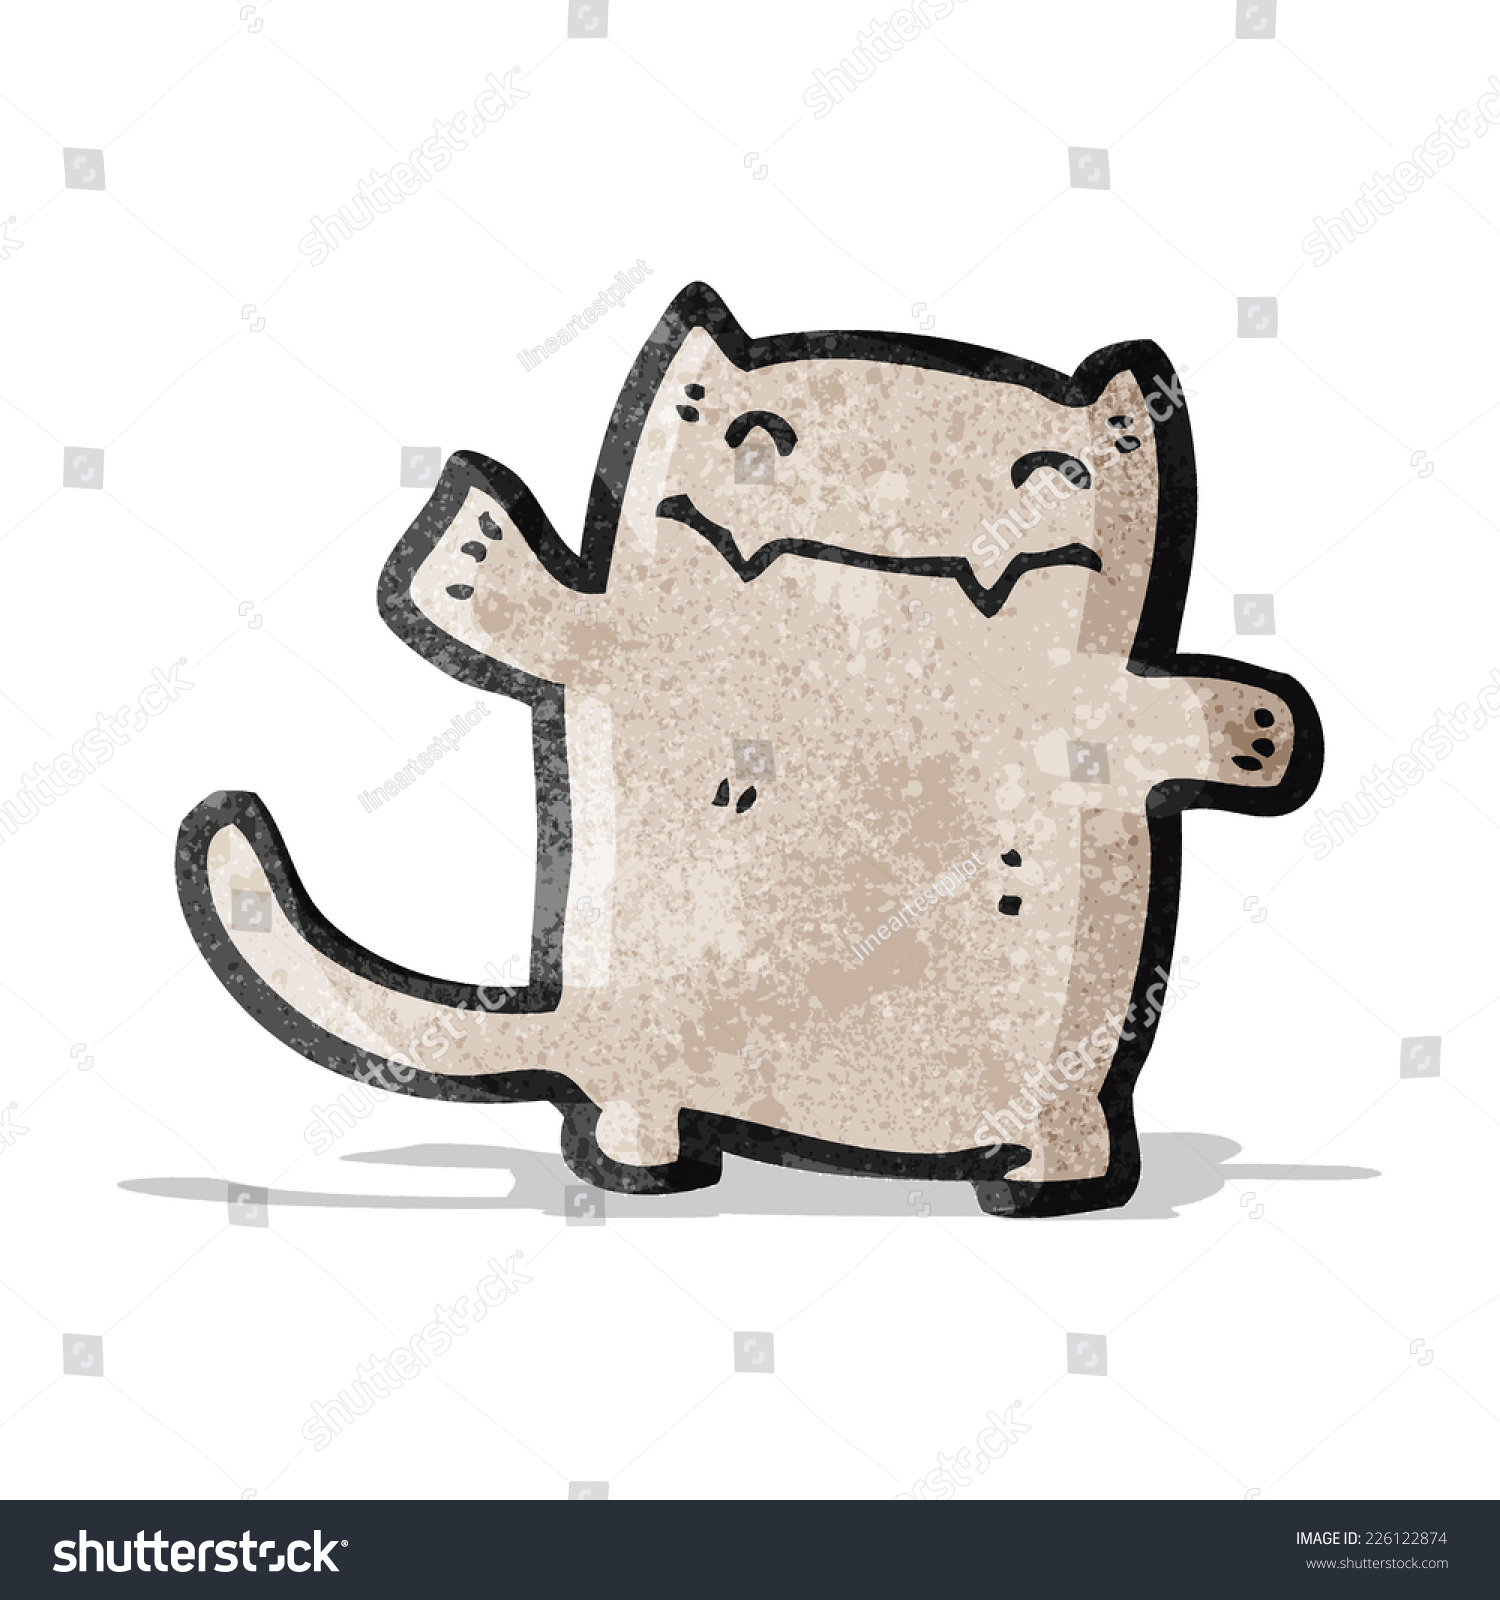 Funny Cartoon Cat Stock Vector Illustration 226122874 : Shutterstock